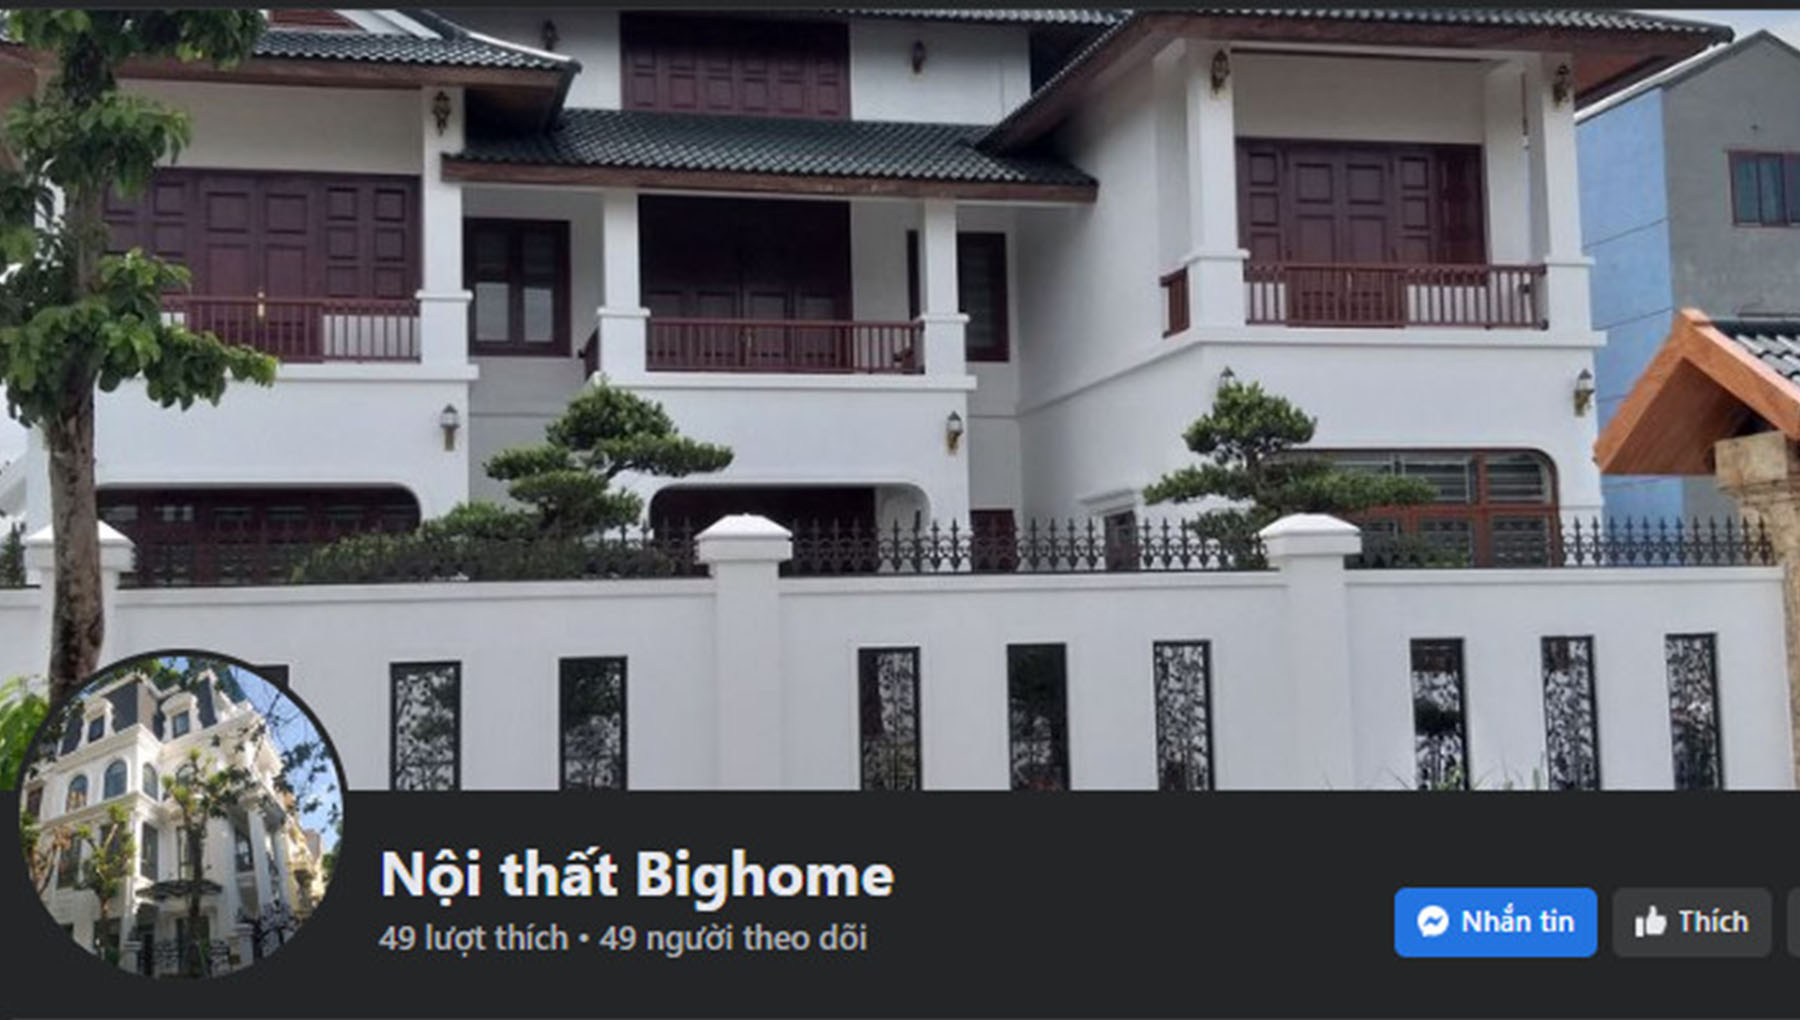 su dung trai phep thuong hieu Bighome 6Cảnh báo: Tình trạng sử dụng trái phép thương hiệu Bighome